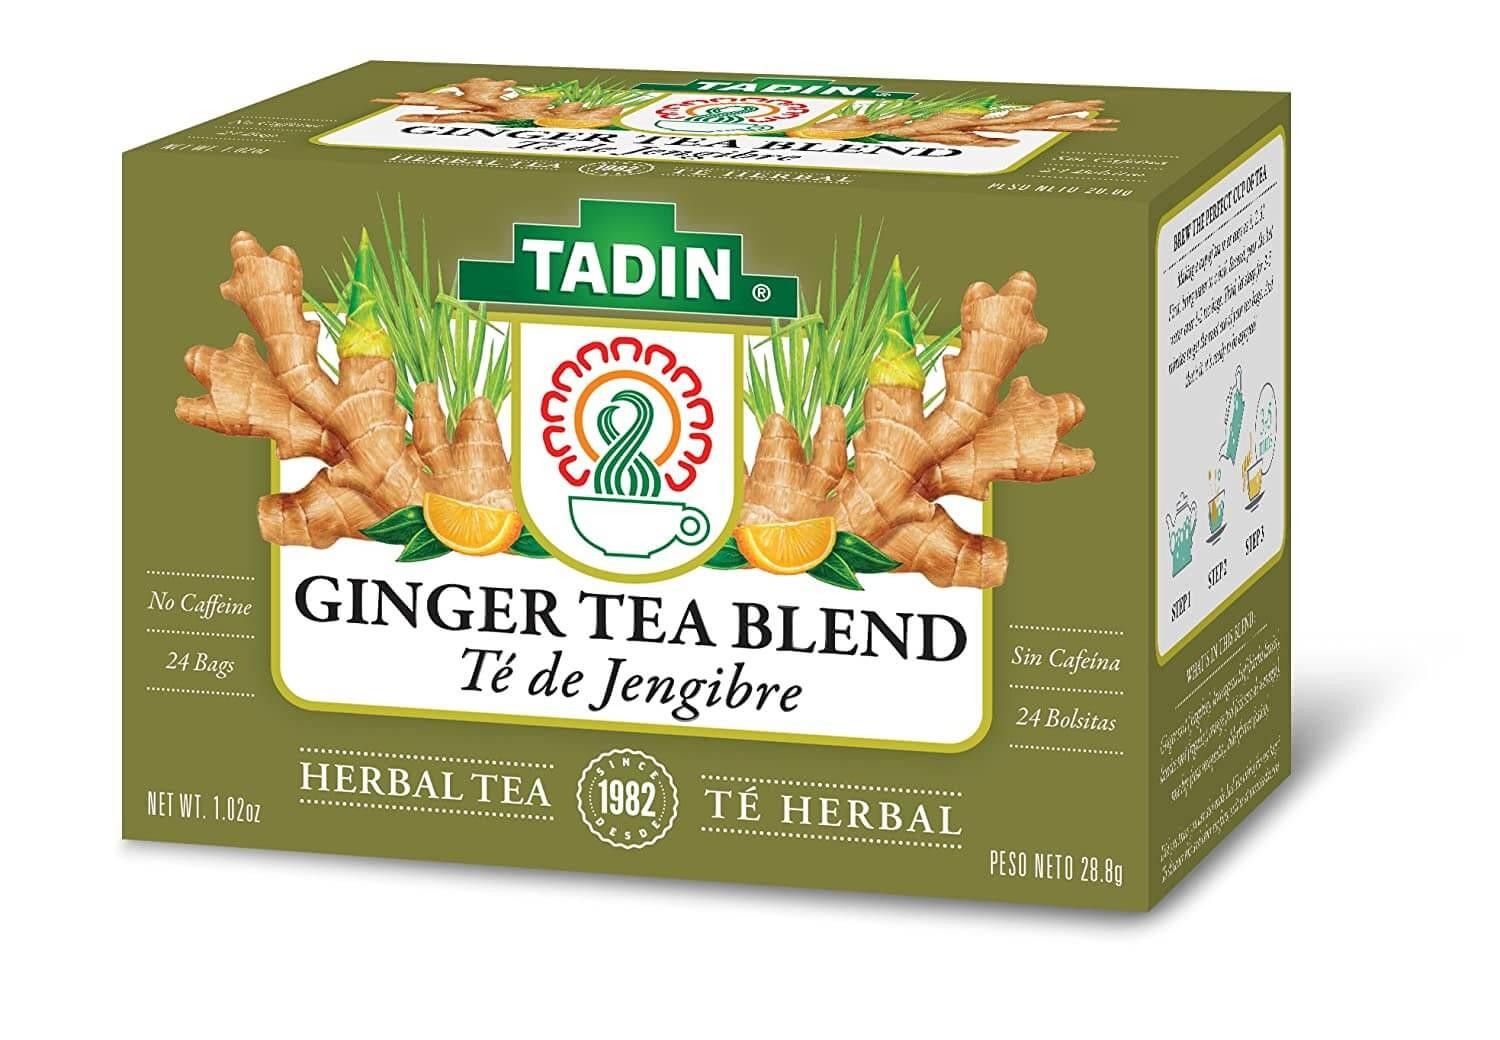 Tadin - Ginger Tea Blend 24 Bags